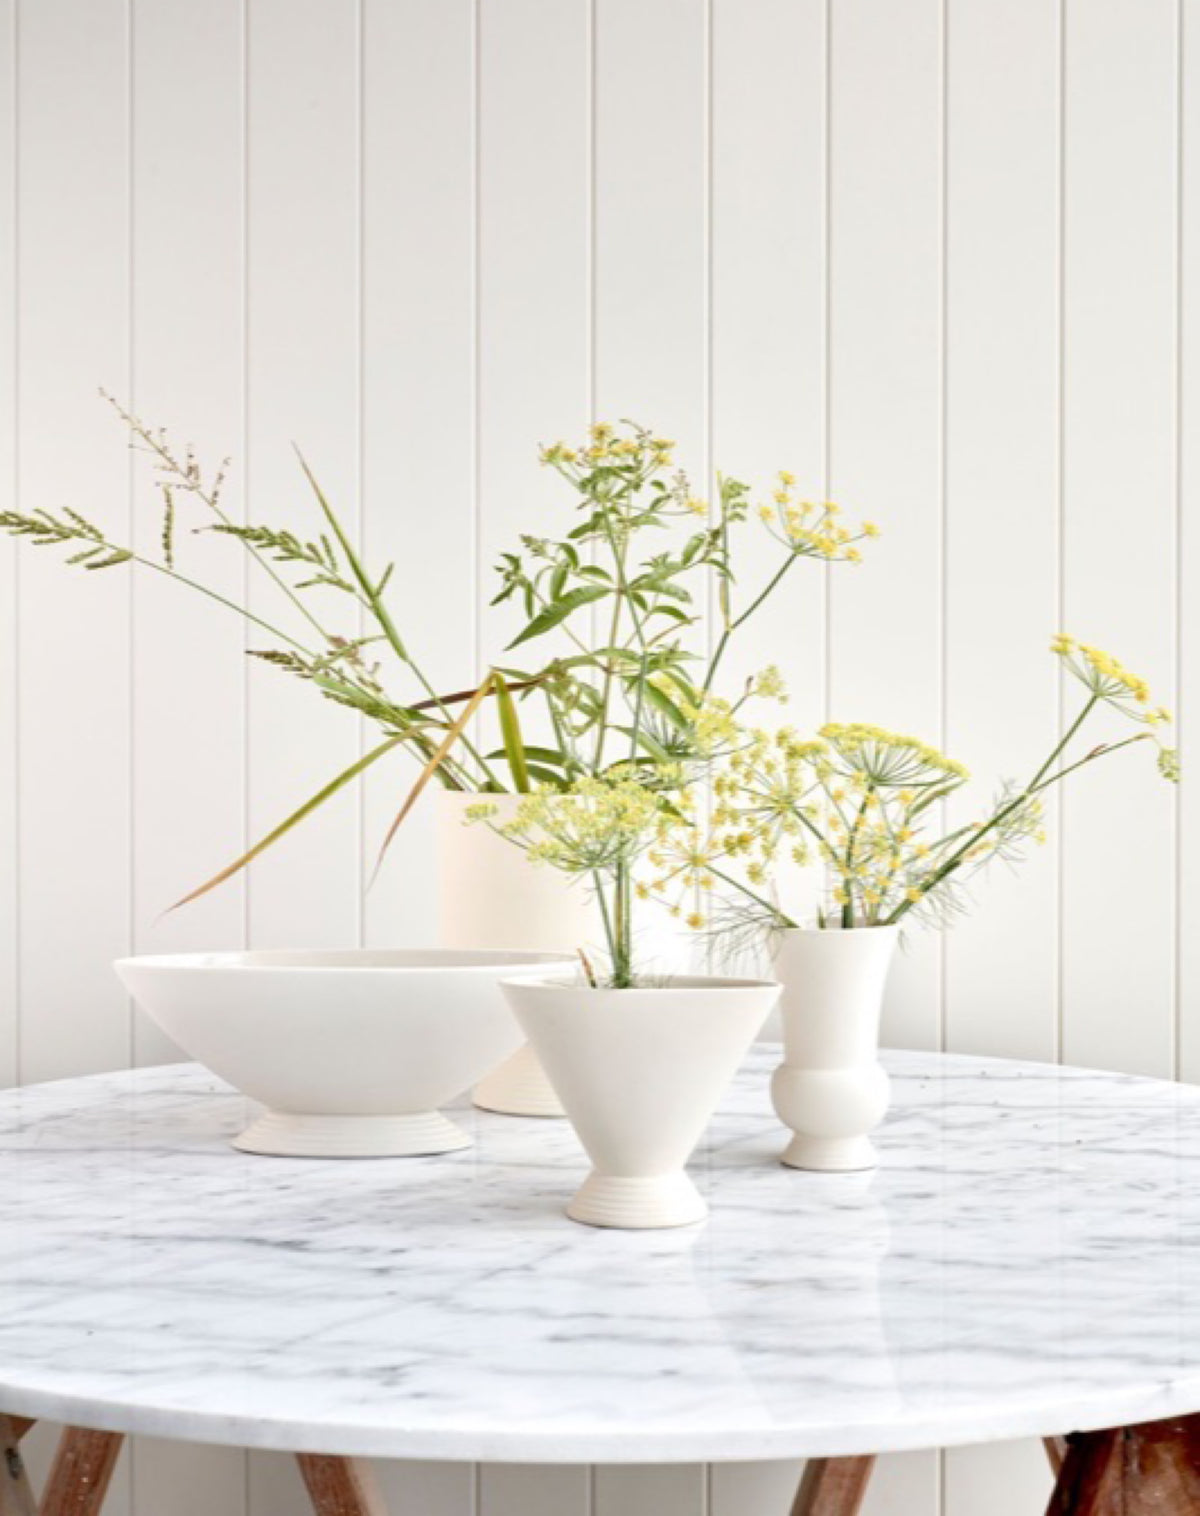 The Arrangement / Scallop Vase